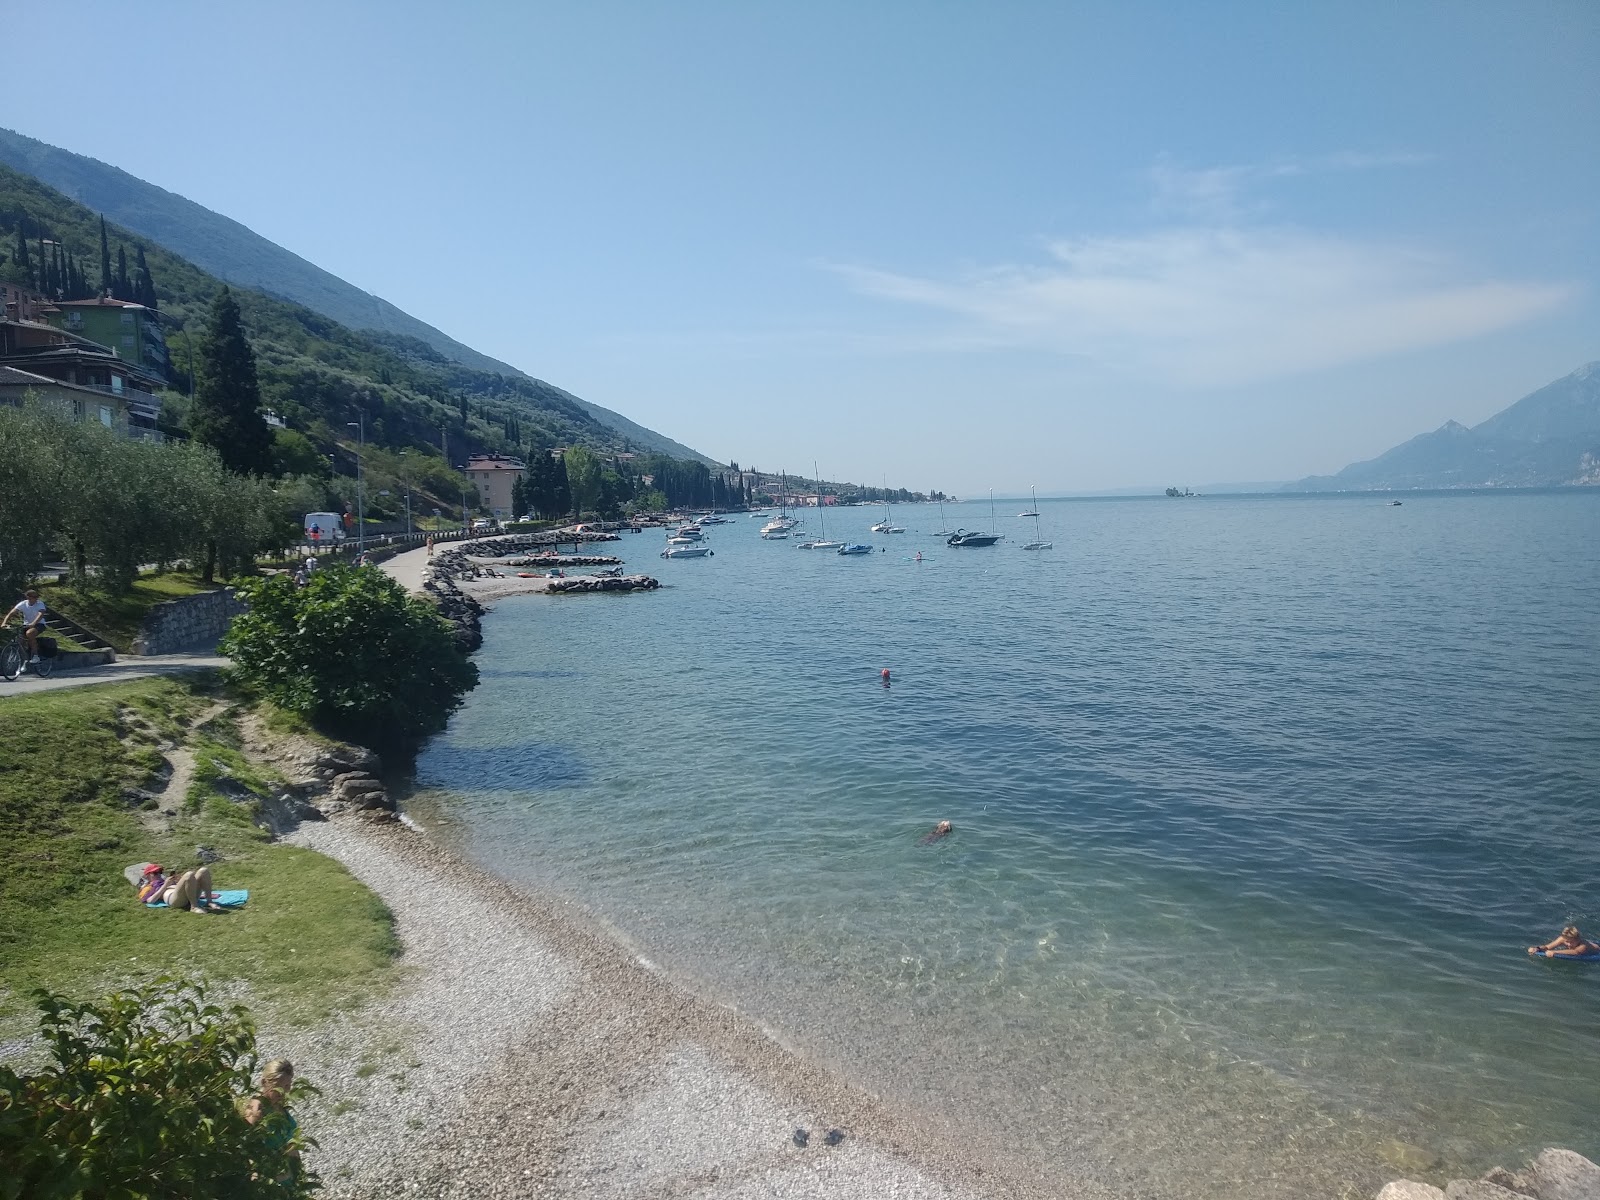 Foto af Spiaggia val di sogno - populært sted blandt afslapningskendere